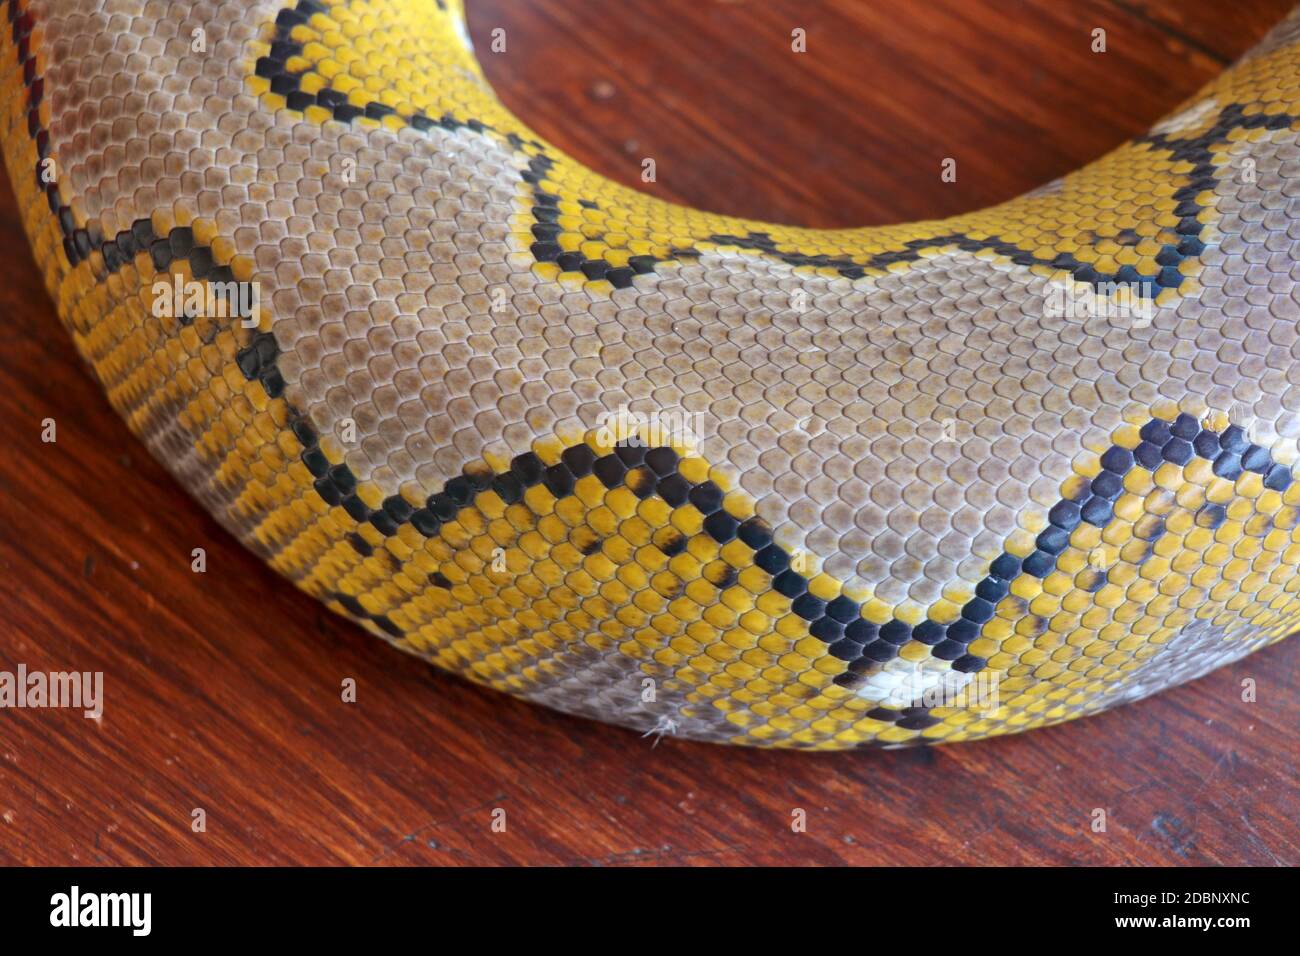 Gros plan de la texture de la peau du serpent pour le fond. Le python réticulé est un serpent non venimeux originaire de l'Asie du Sud et du Sud-est. Macro photo python sna Banque D'Images